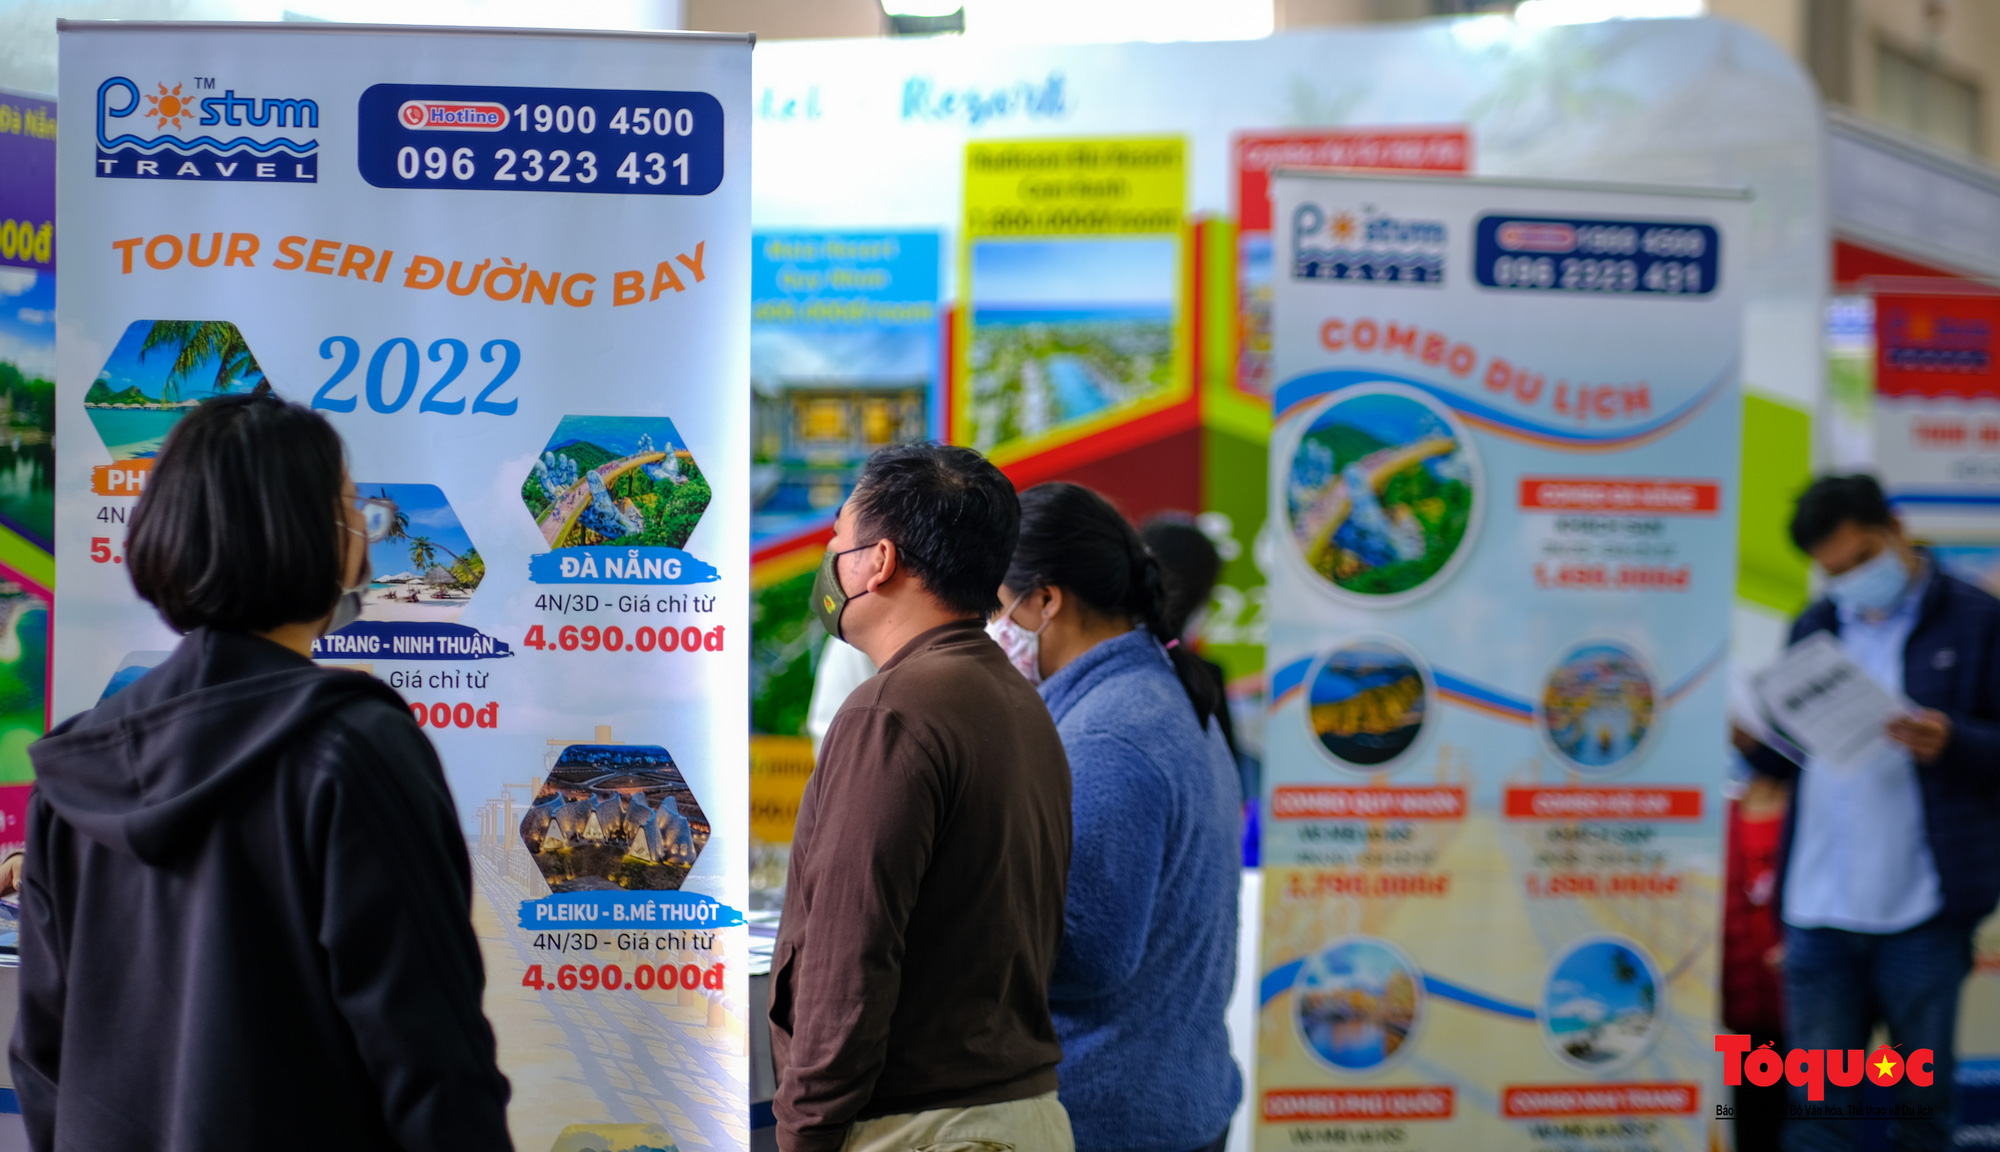 Hà Nội: Người dân thủ đô hào hứng săn vé giá rẻ tại hội chợ Du lịch quốc tế Việt Nam 2022 - Ảnh 11.